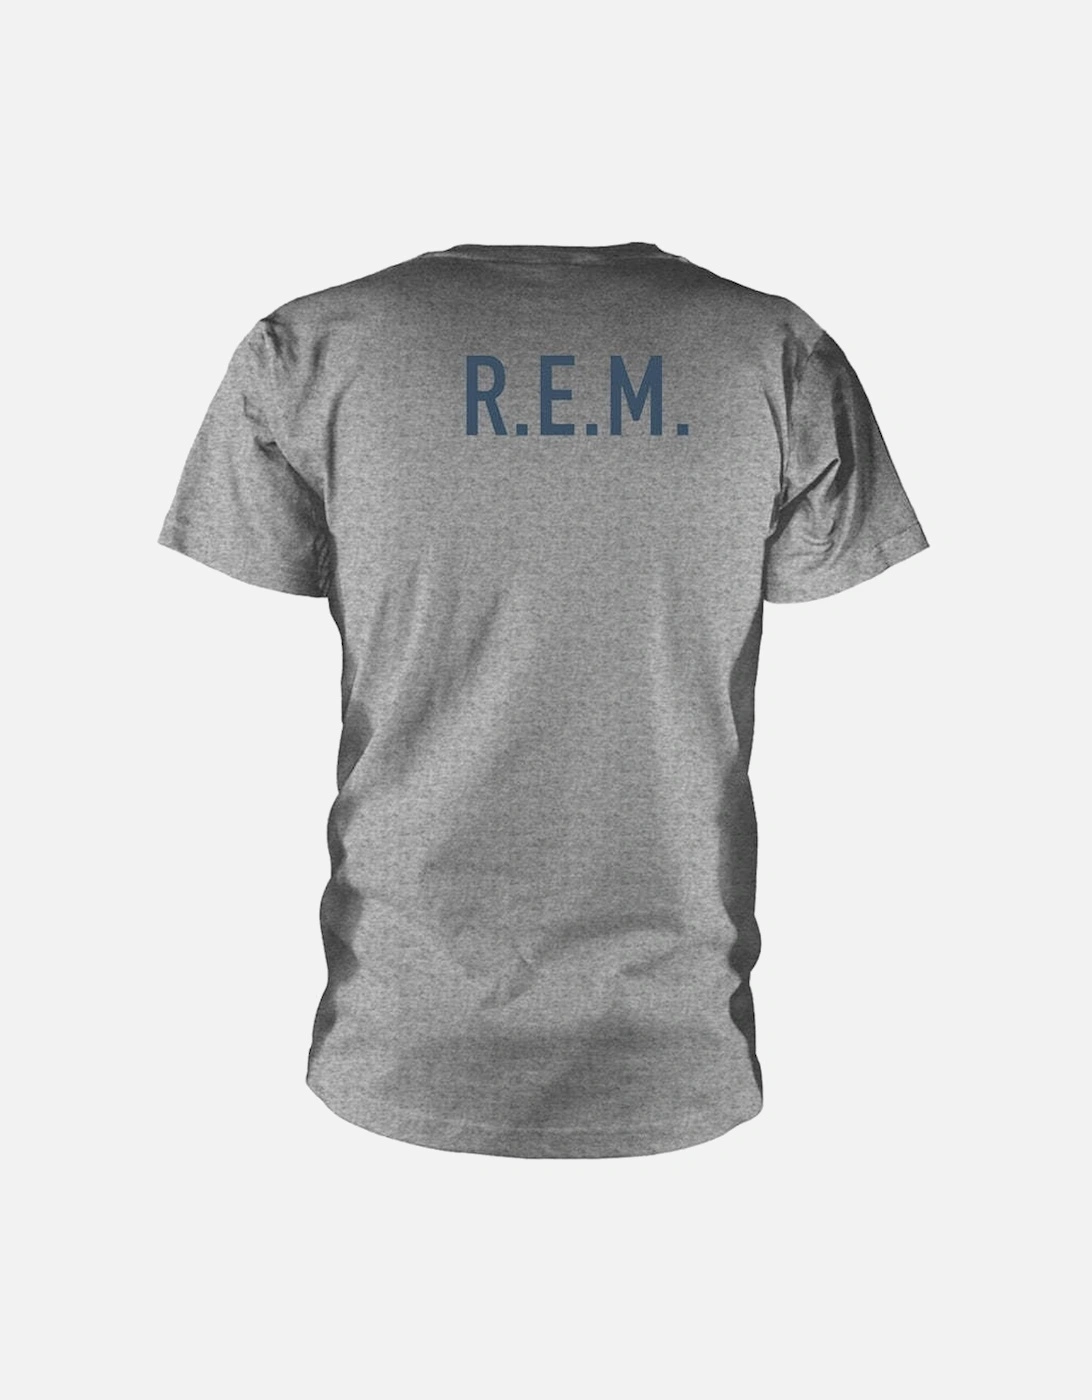 R.E.M Unisex Adult Automatic T-Shirt